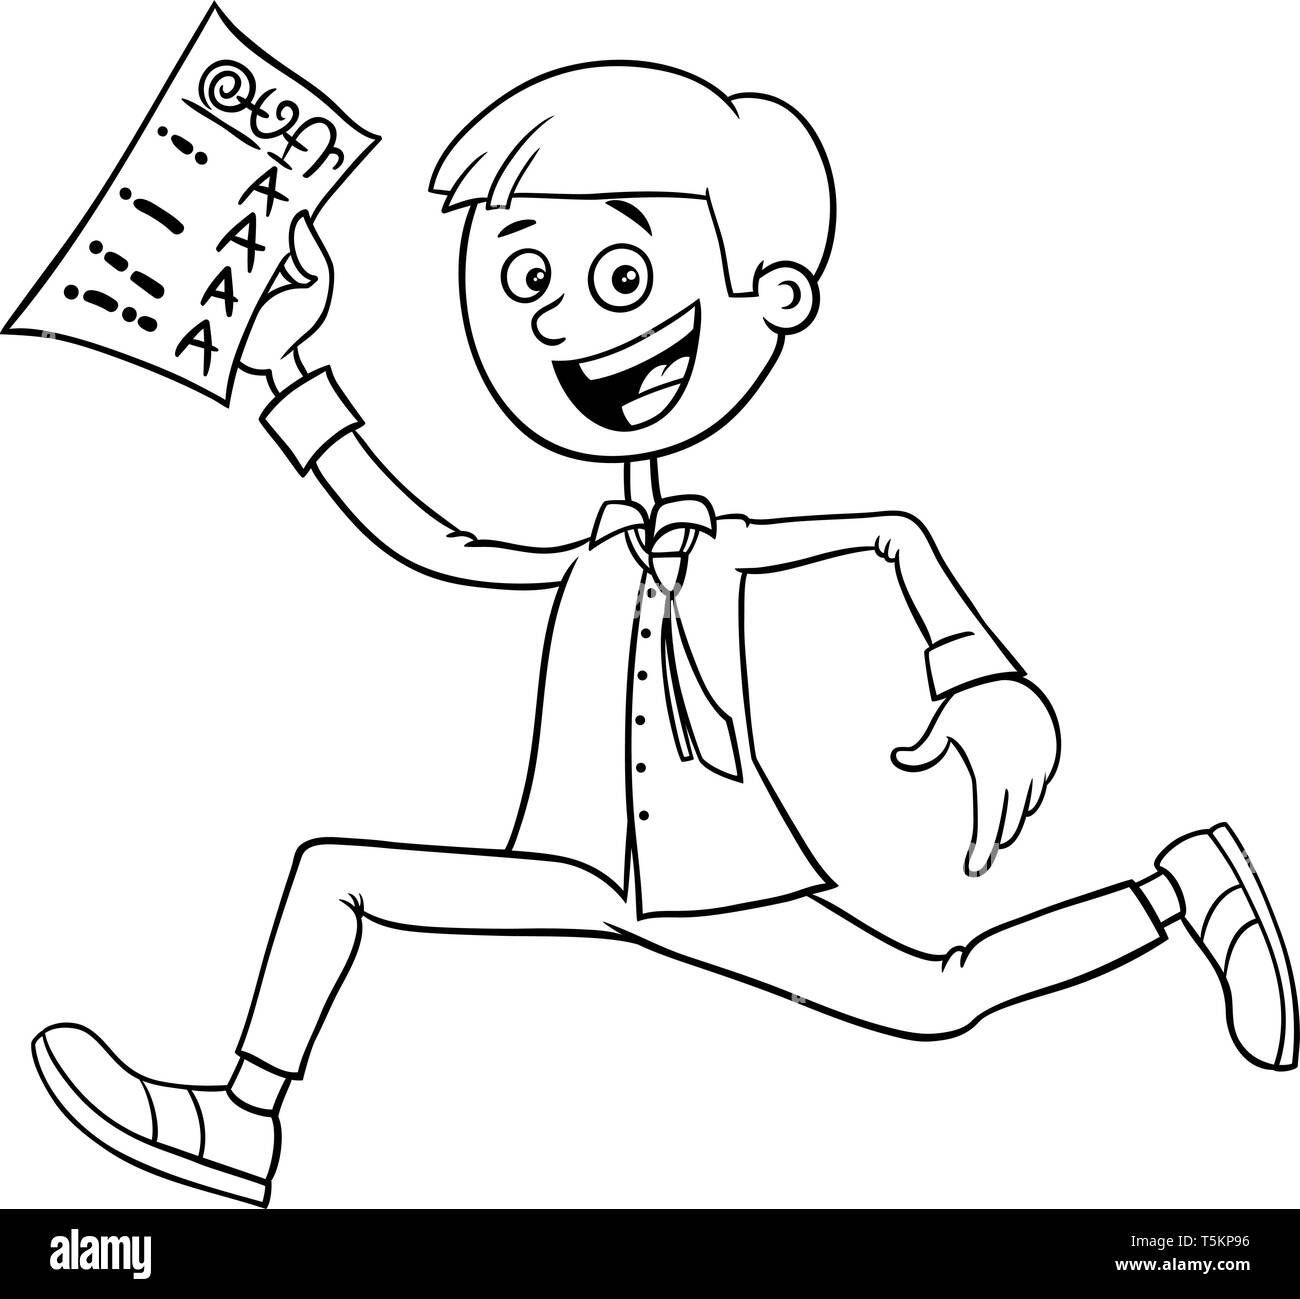 Schwarze und Weiße Cartoon Illustration der Glückliche junge mit Schule oder Klasse bericht Malbuch Stock Vektor